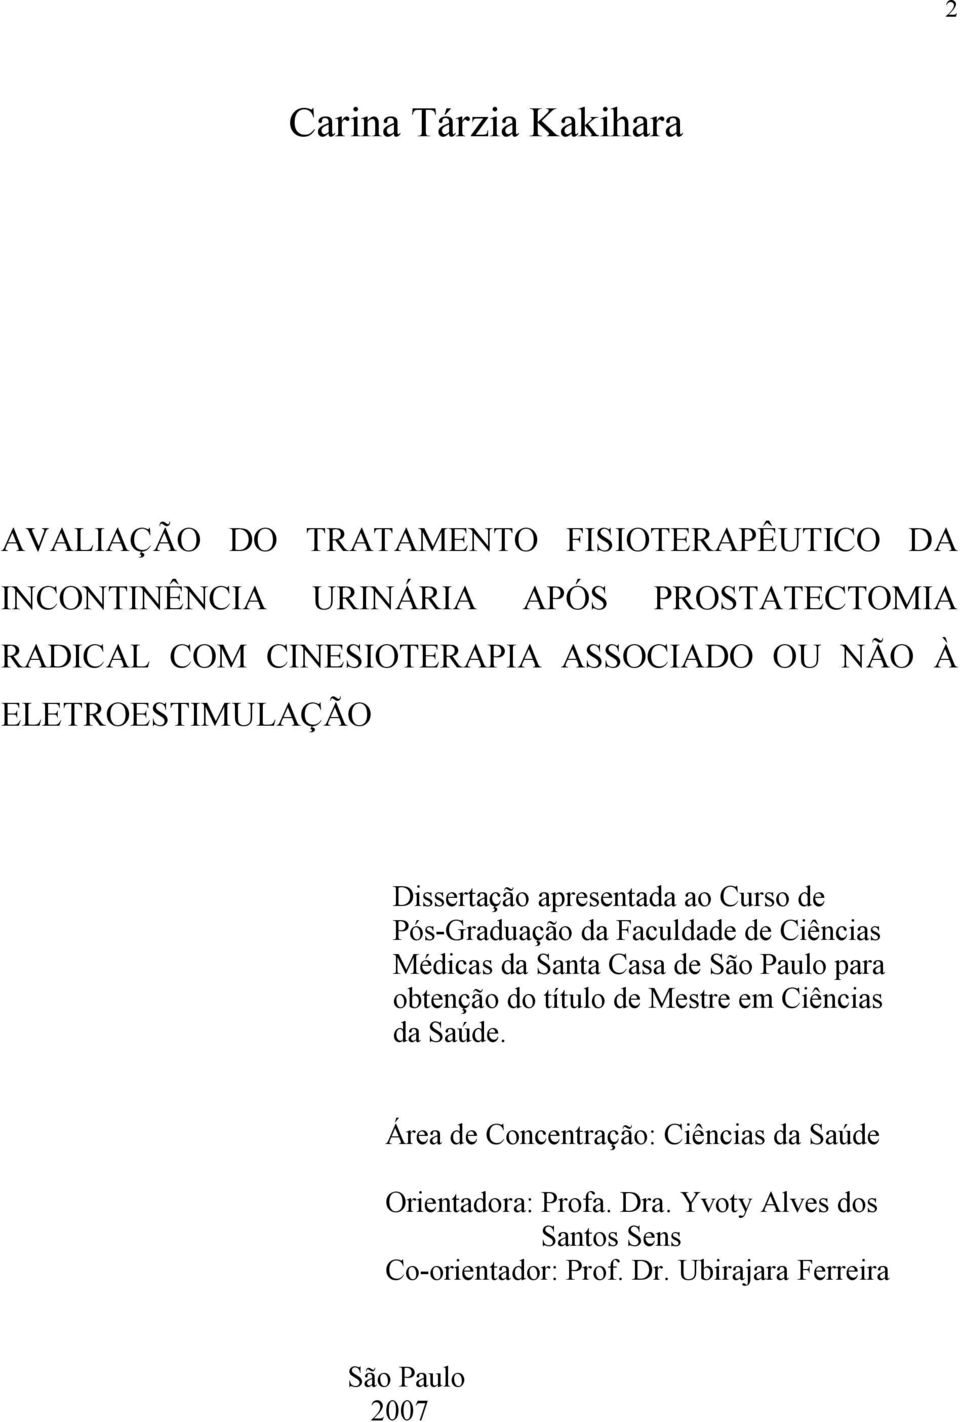 Ciências Médicas da Santa Casa de São Paulo para obtenção do título de Mestre em Ciências da Saúde.